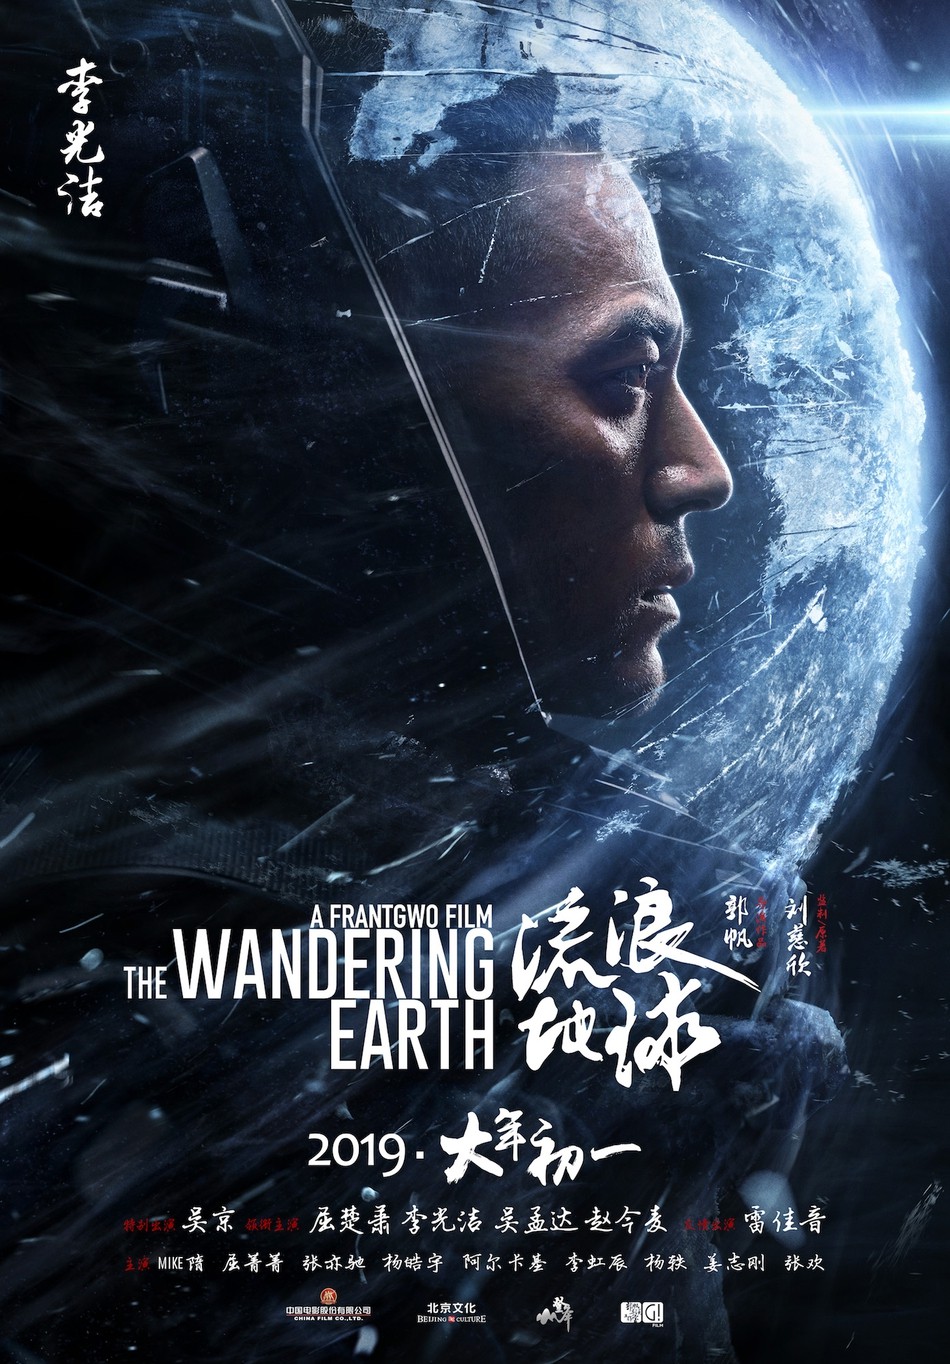 国产科幻大片《流浪地球》角色海报 冒险一搏拯救人类